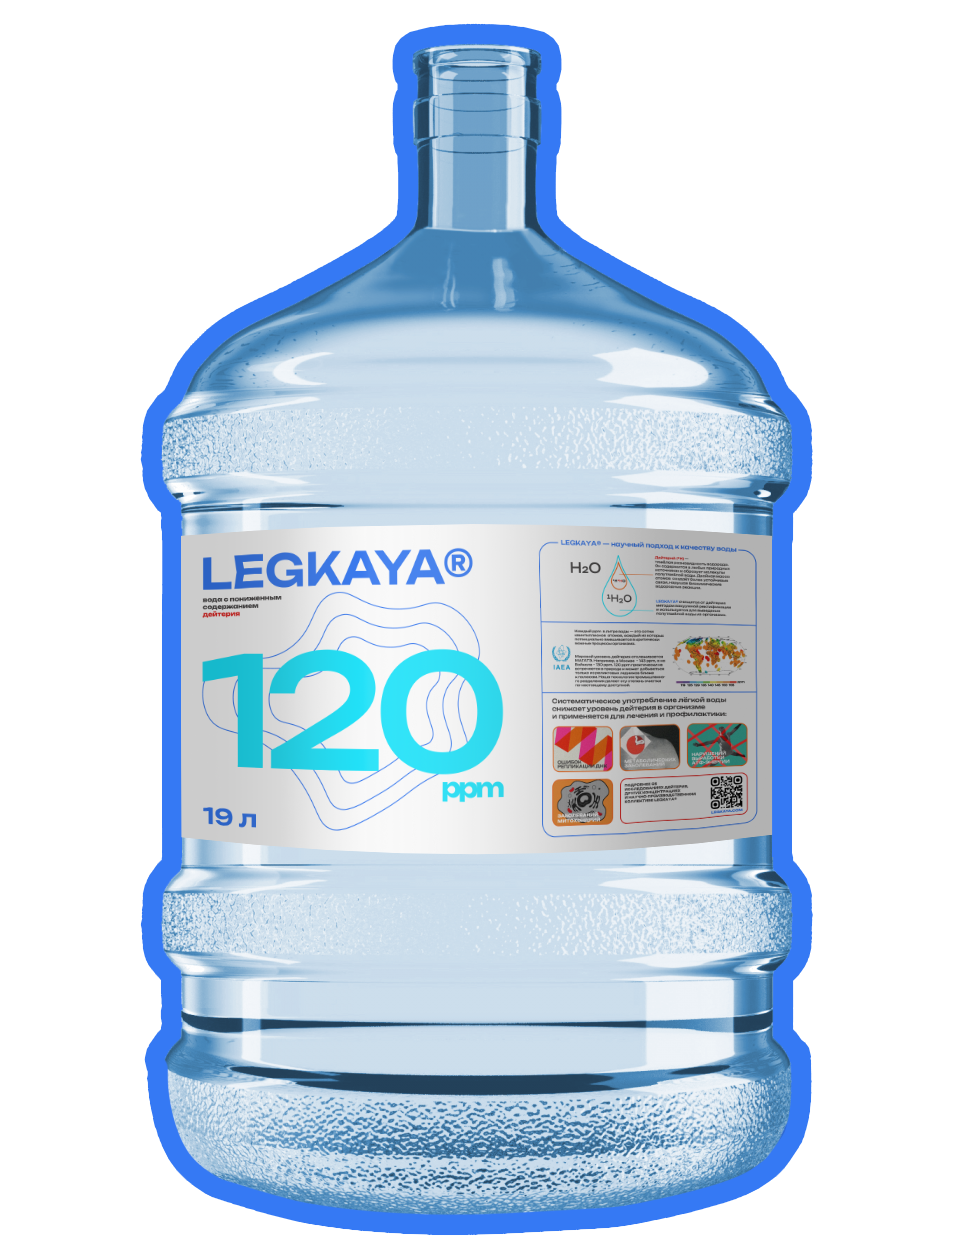 Вода питьевая LEGKAYA 120 ppm бездейтериевая легкая, 19 л